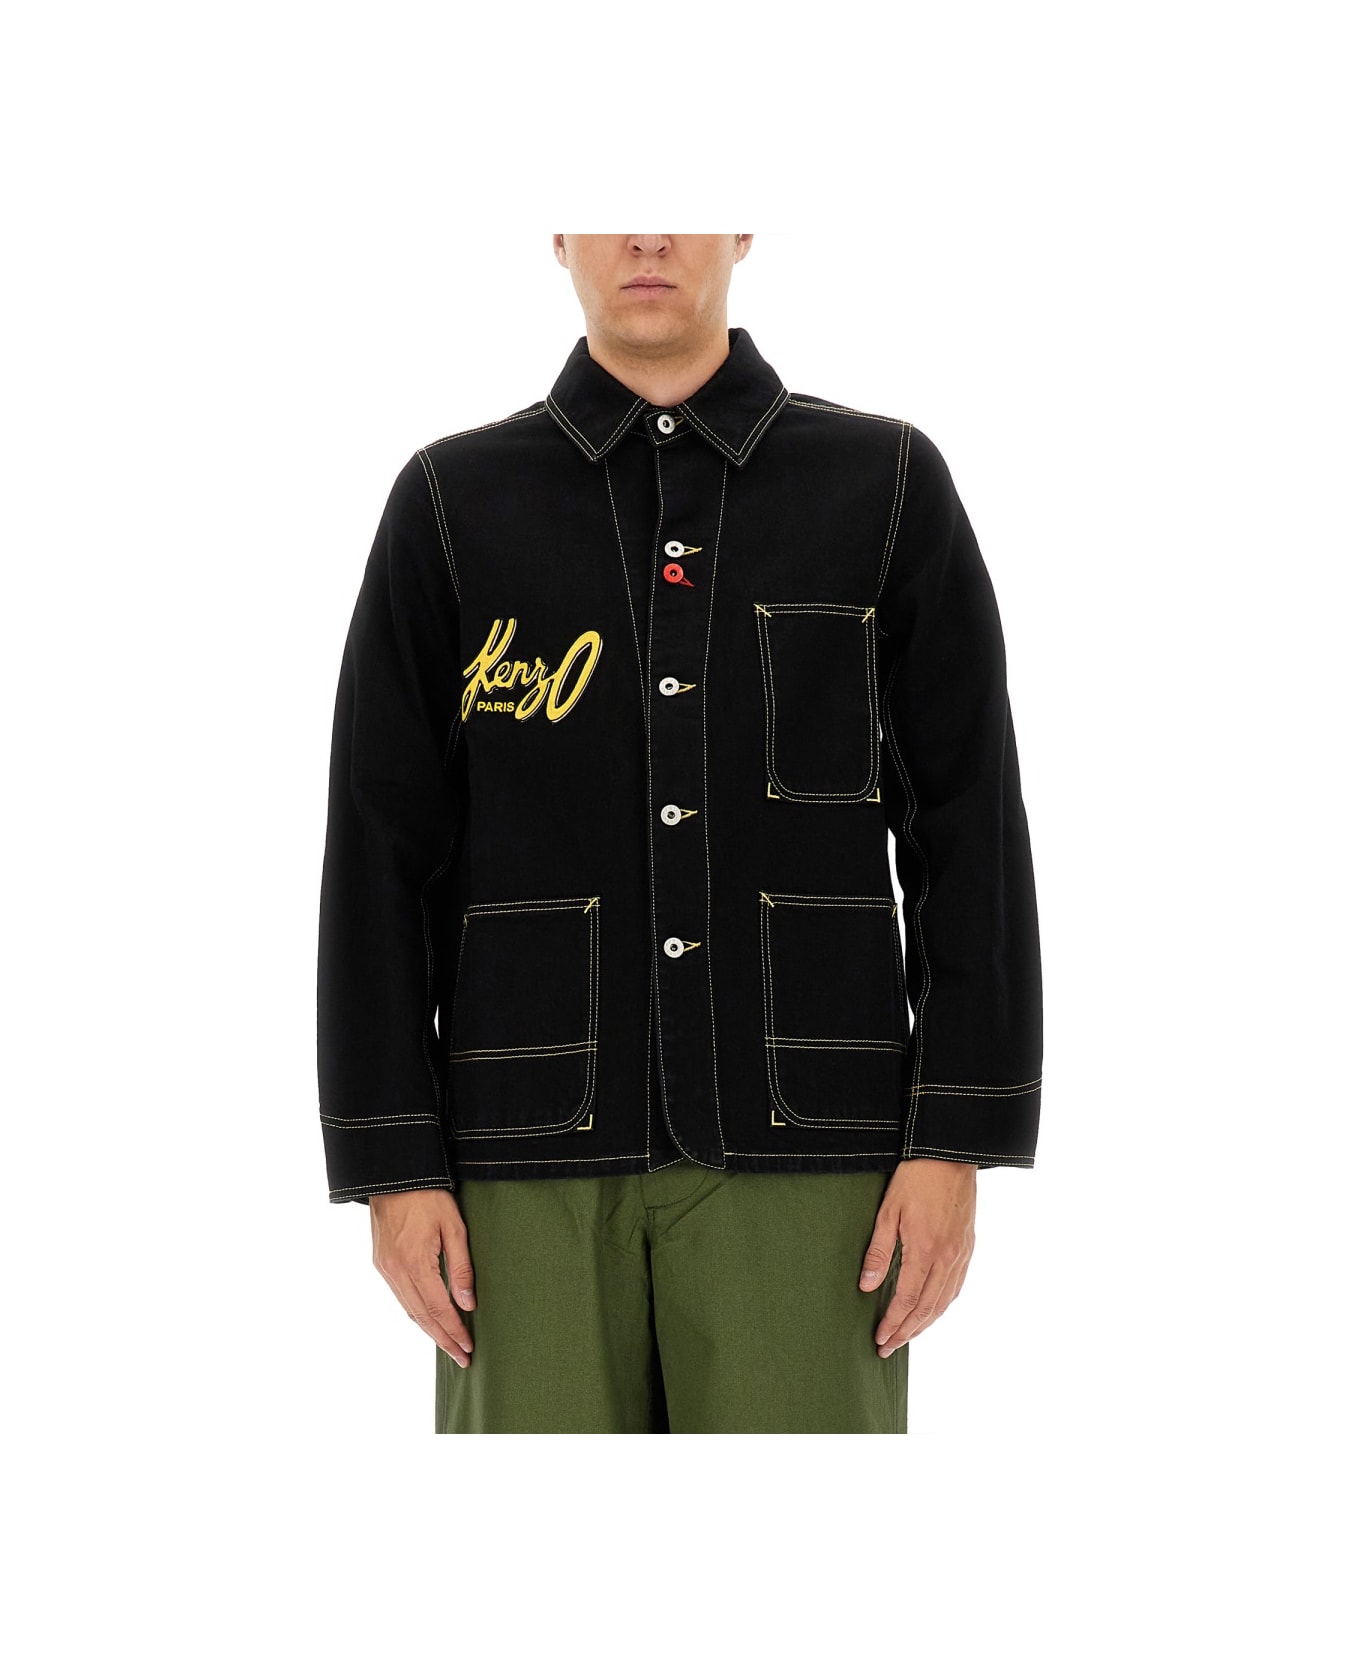 Kenzo Workwear Jacket - BLACK